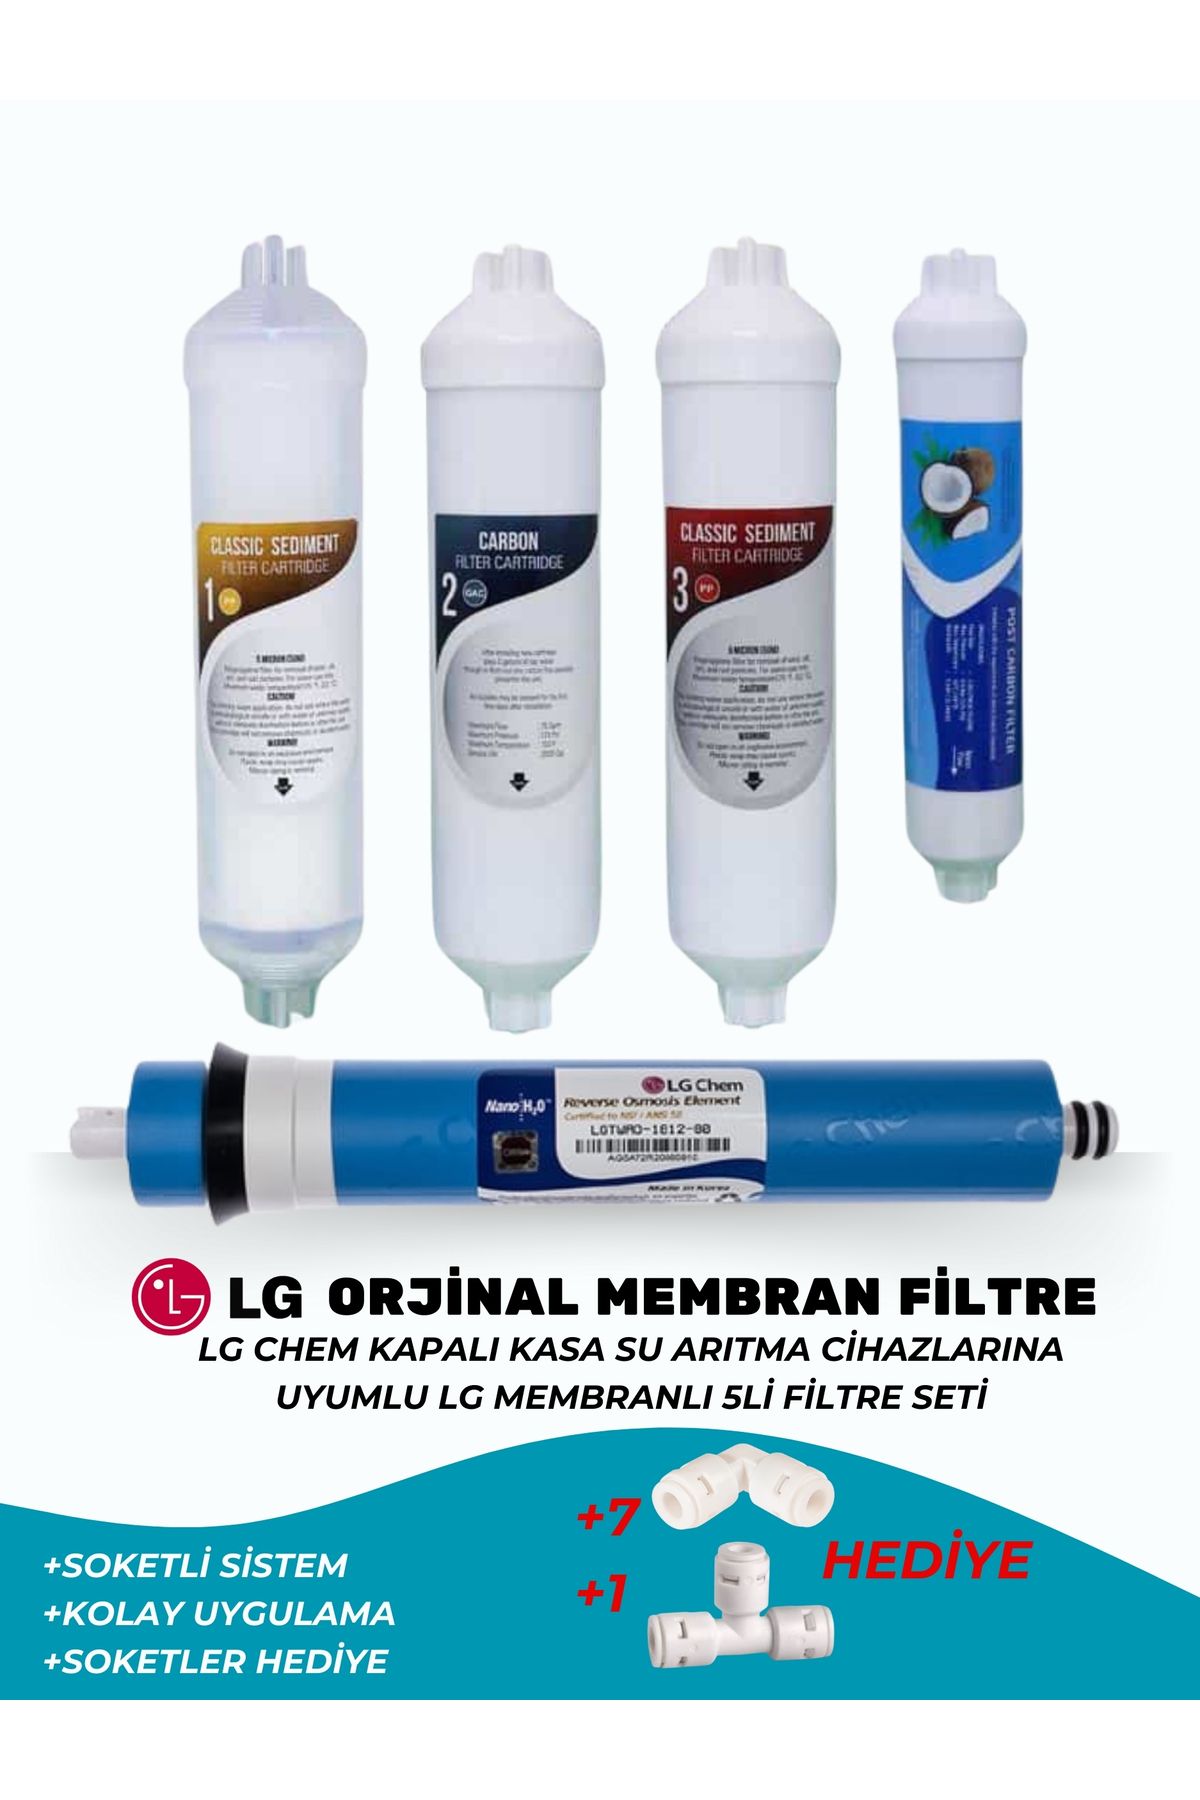 Genel Markalar Full Lg Filtre Seti Soket Hediyeli Kapalı Kasa Su Arıtma Cihazlarına Uyumlu 5'li Filtre Seti